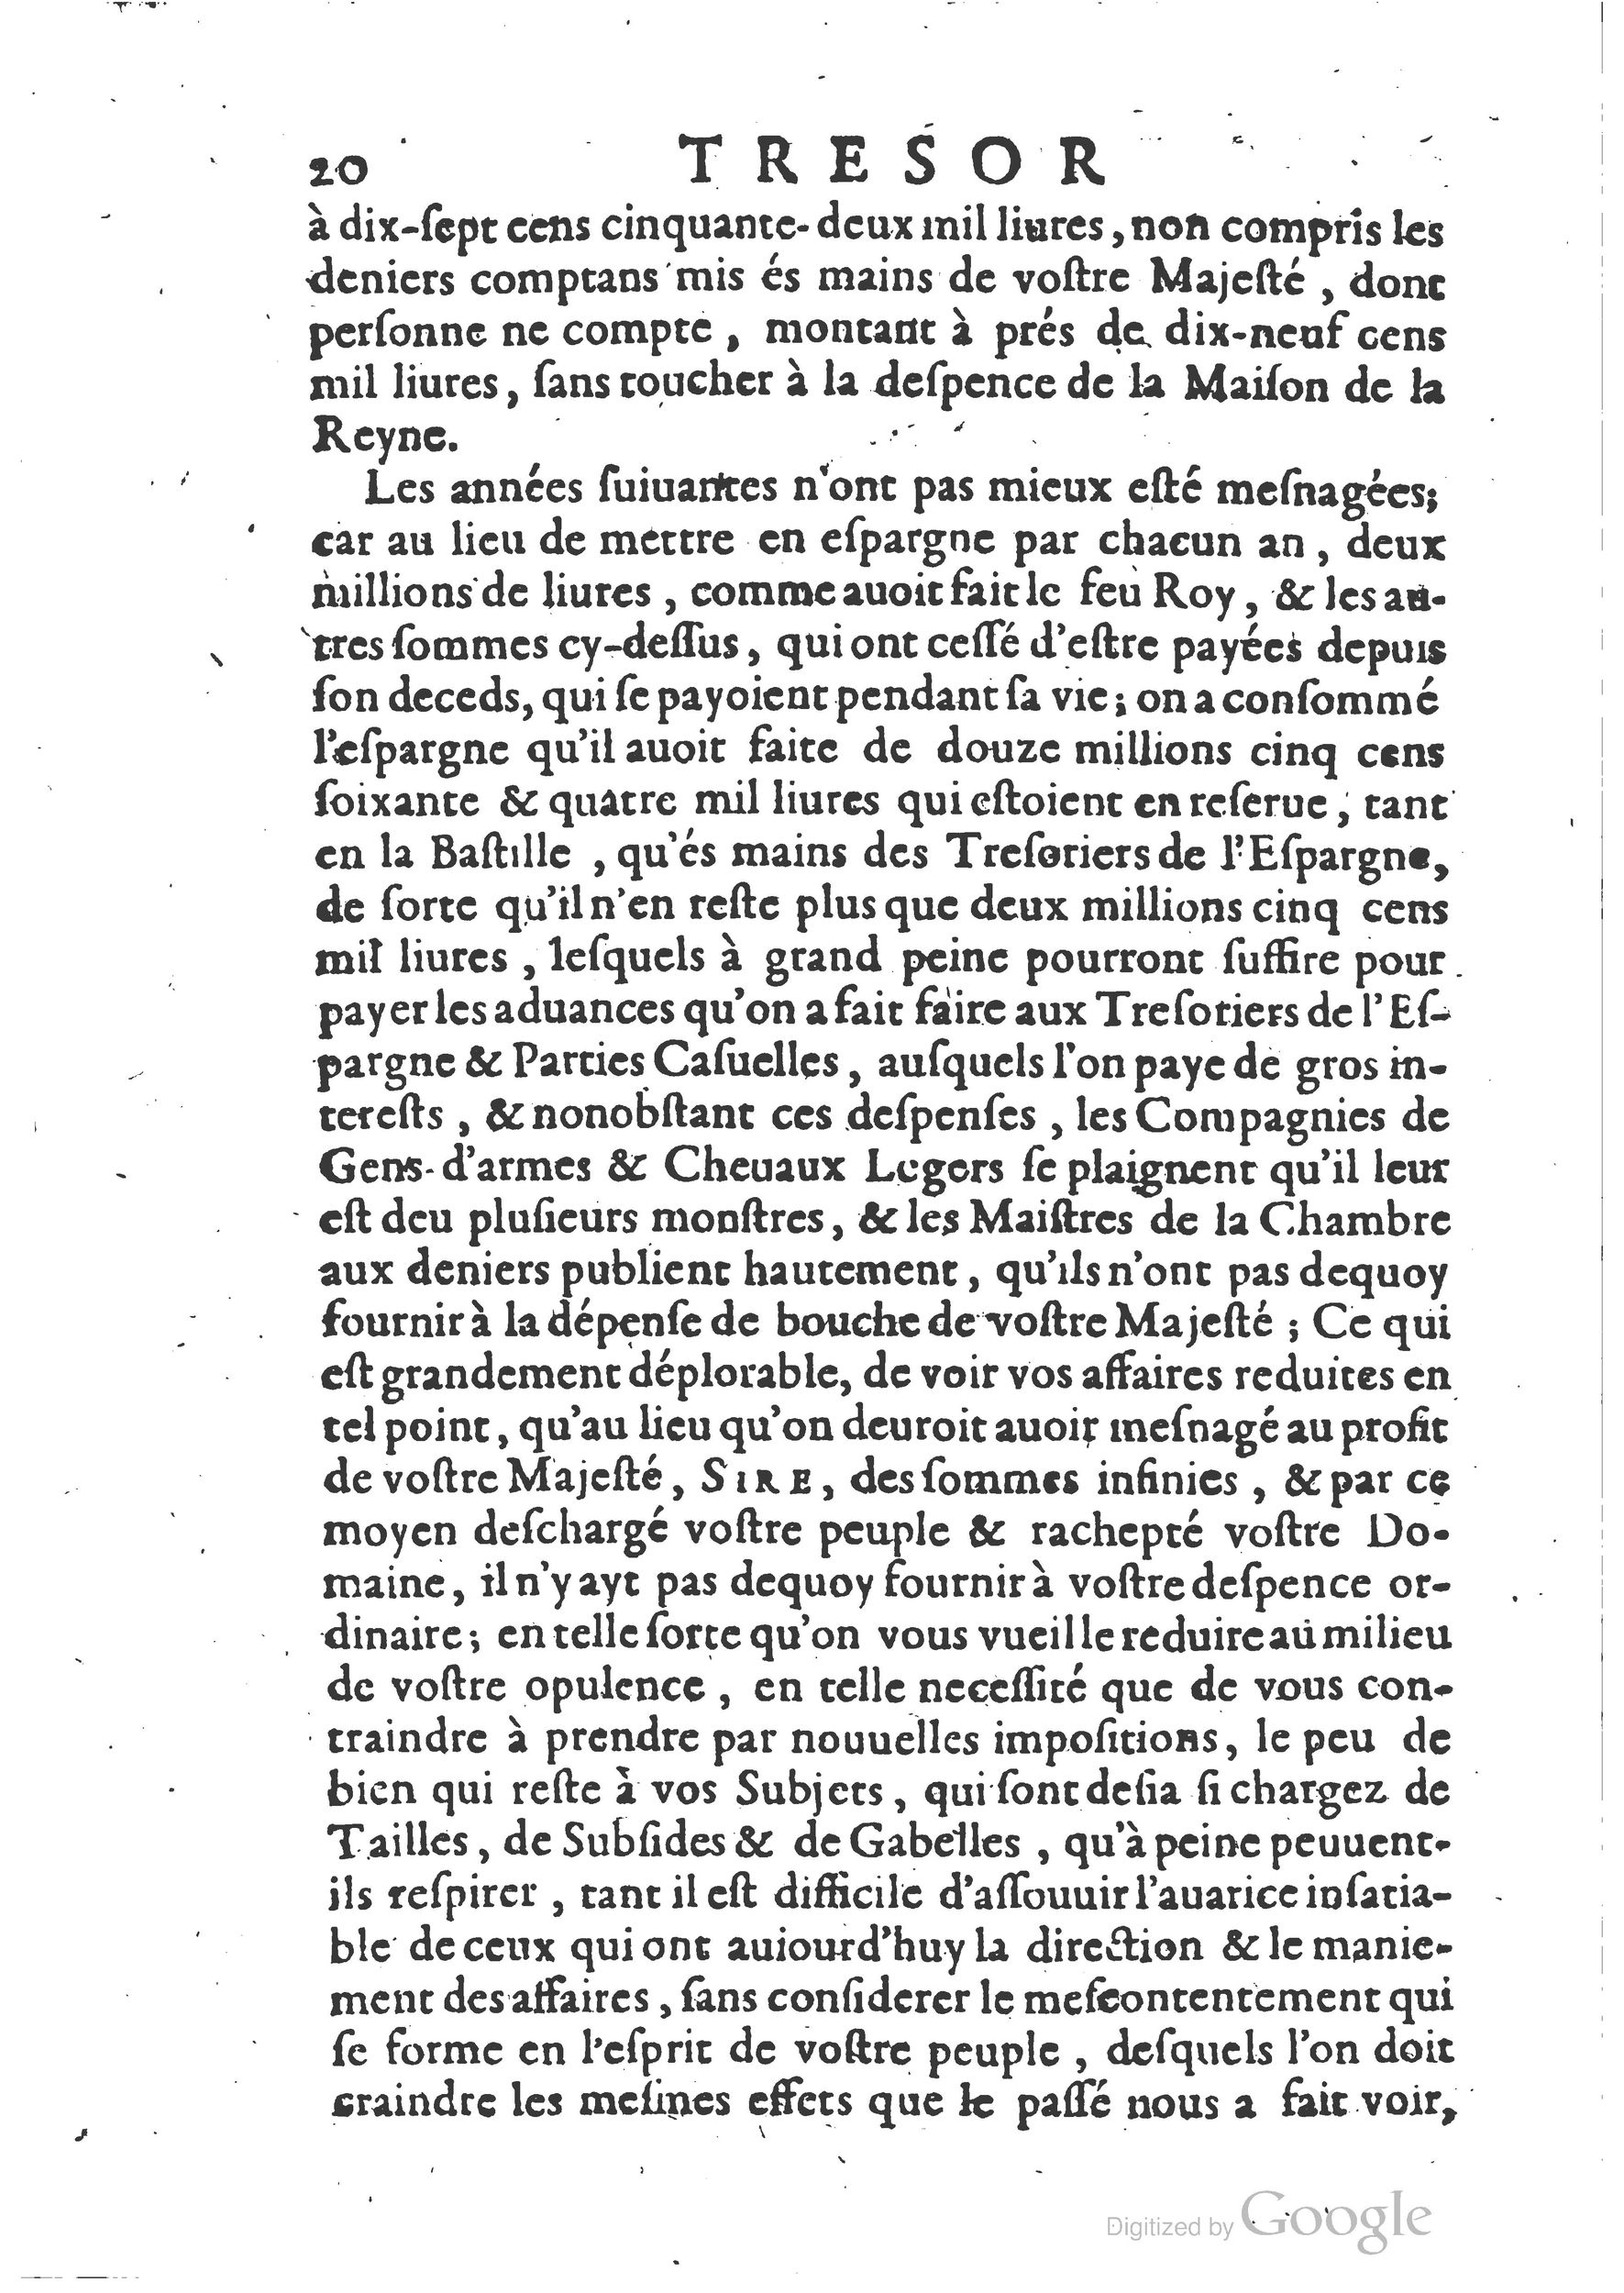 1654 Trésor des harangues, remontrances et oraisons funèbres Robin_BM Lyon_Page_271.jpg